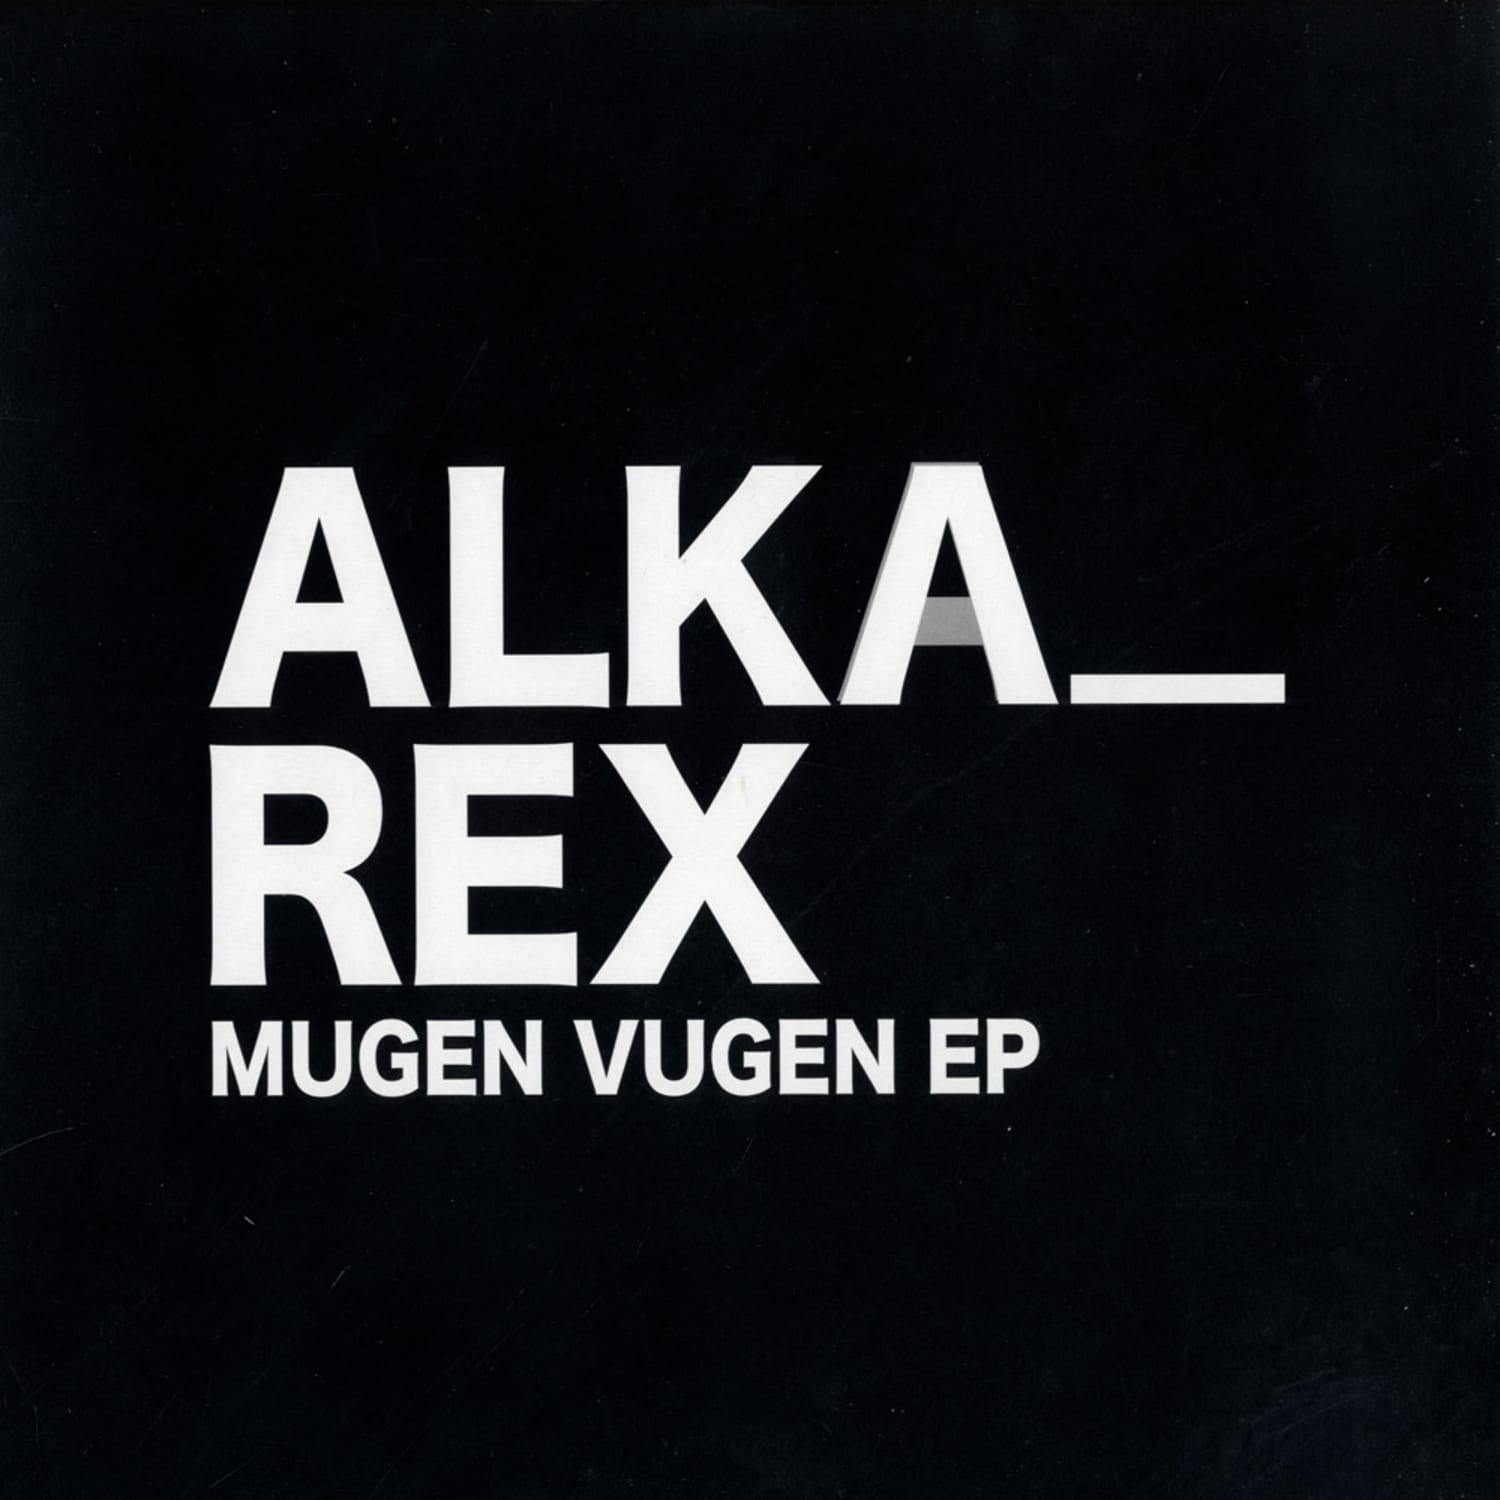 Alka_Rex - MUGEN VUGEN EP